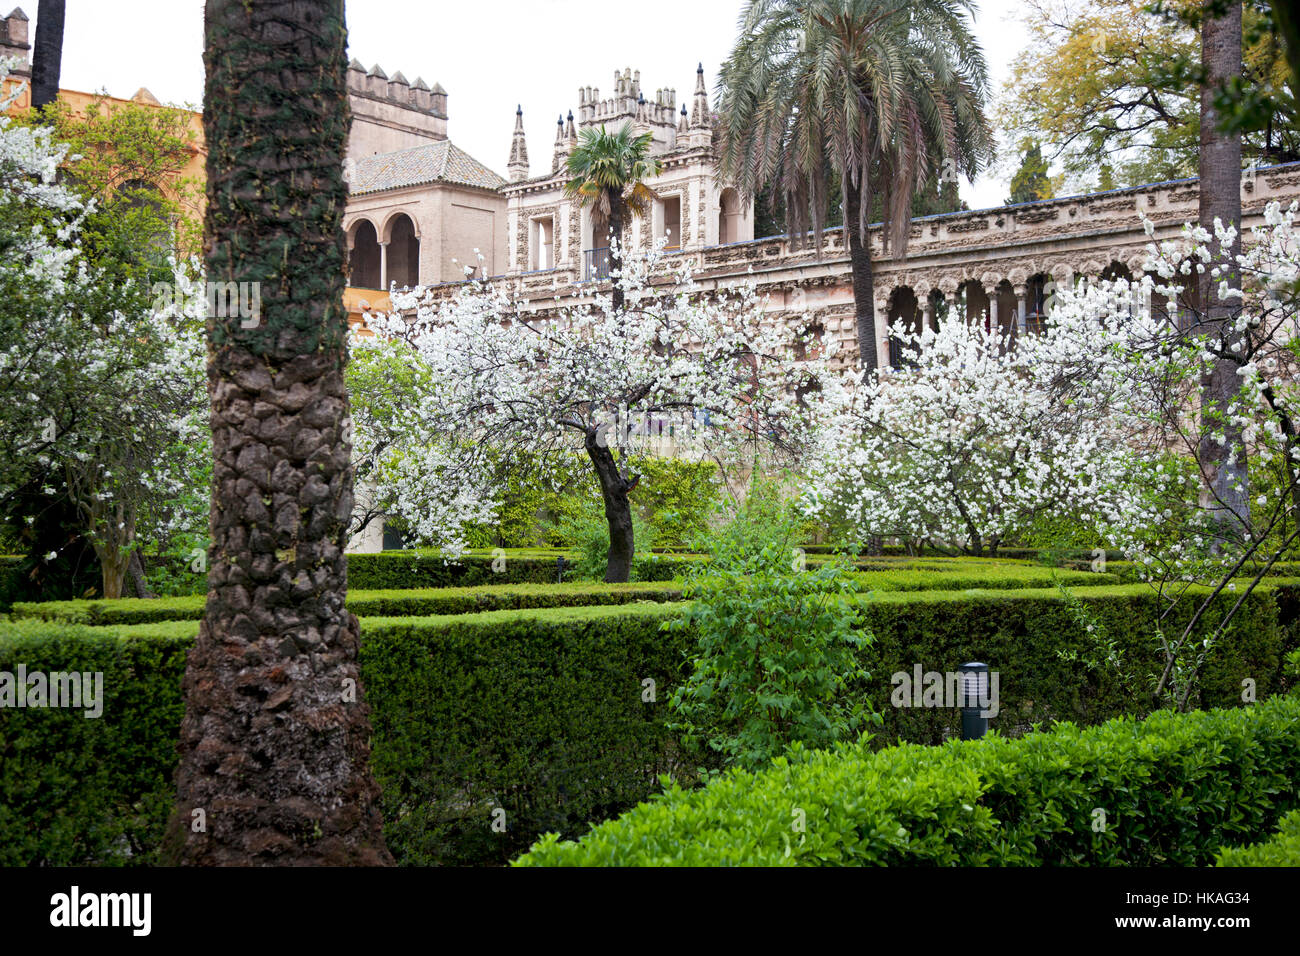 Primavera sbocciano i fiori nei giardini dell'Alcazar di Siviglia, in Andalusia. Foto Stock